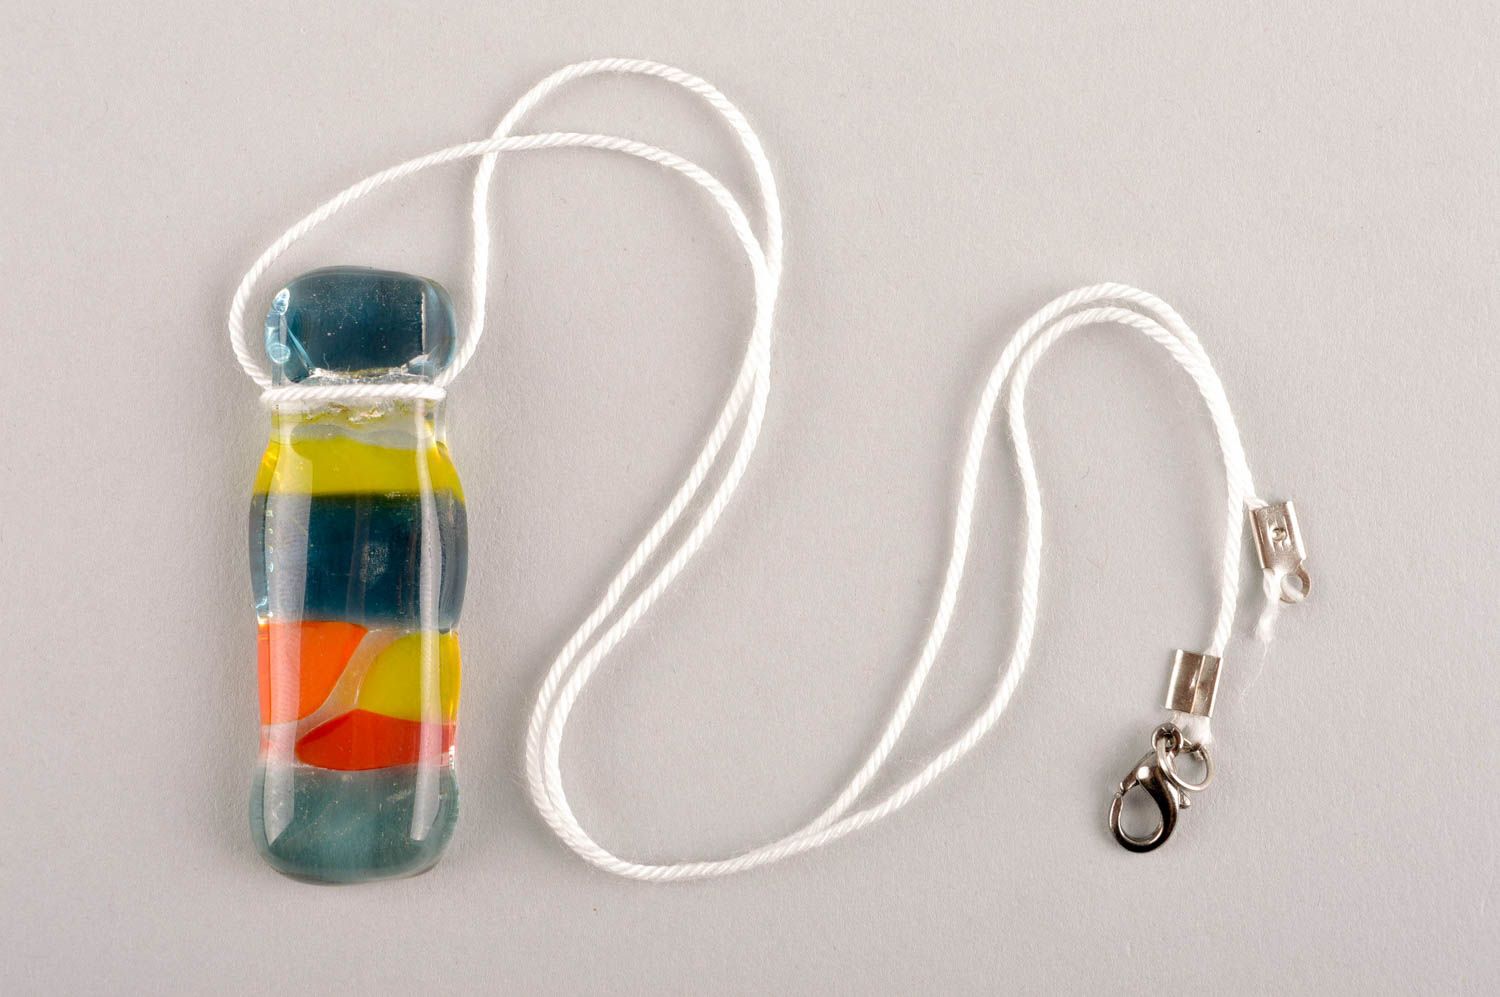 Handmade pendant designer accessory glass pendant for women gift ideas photo 2